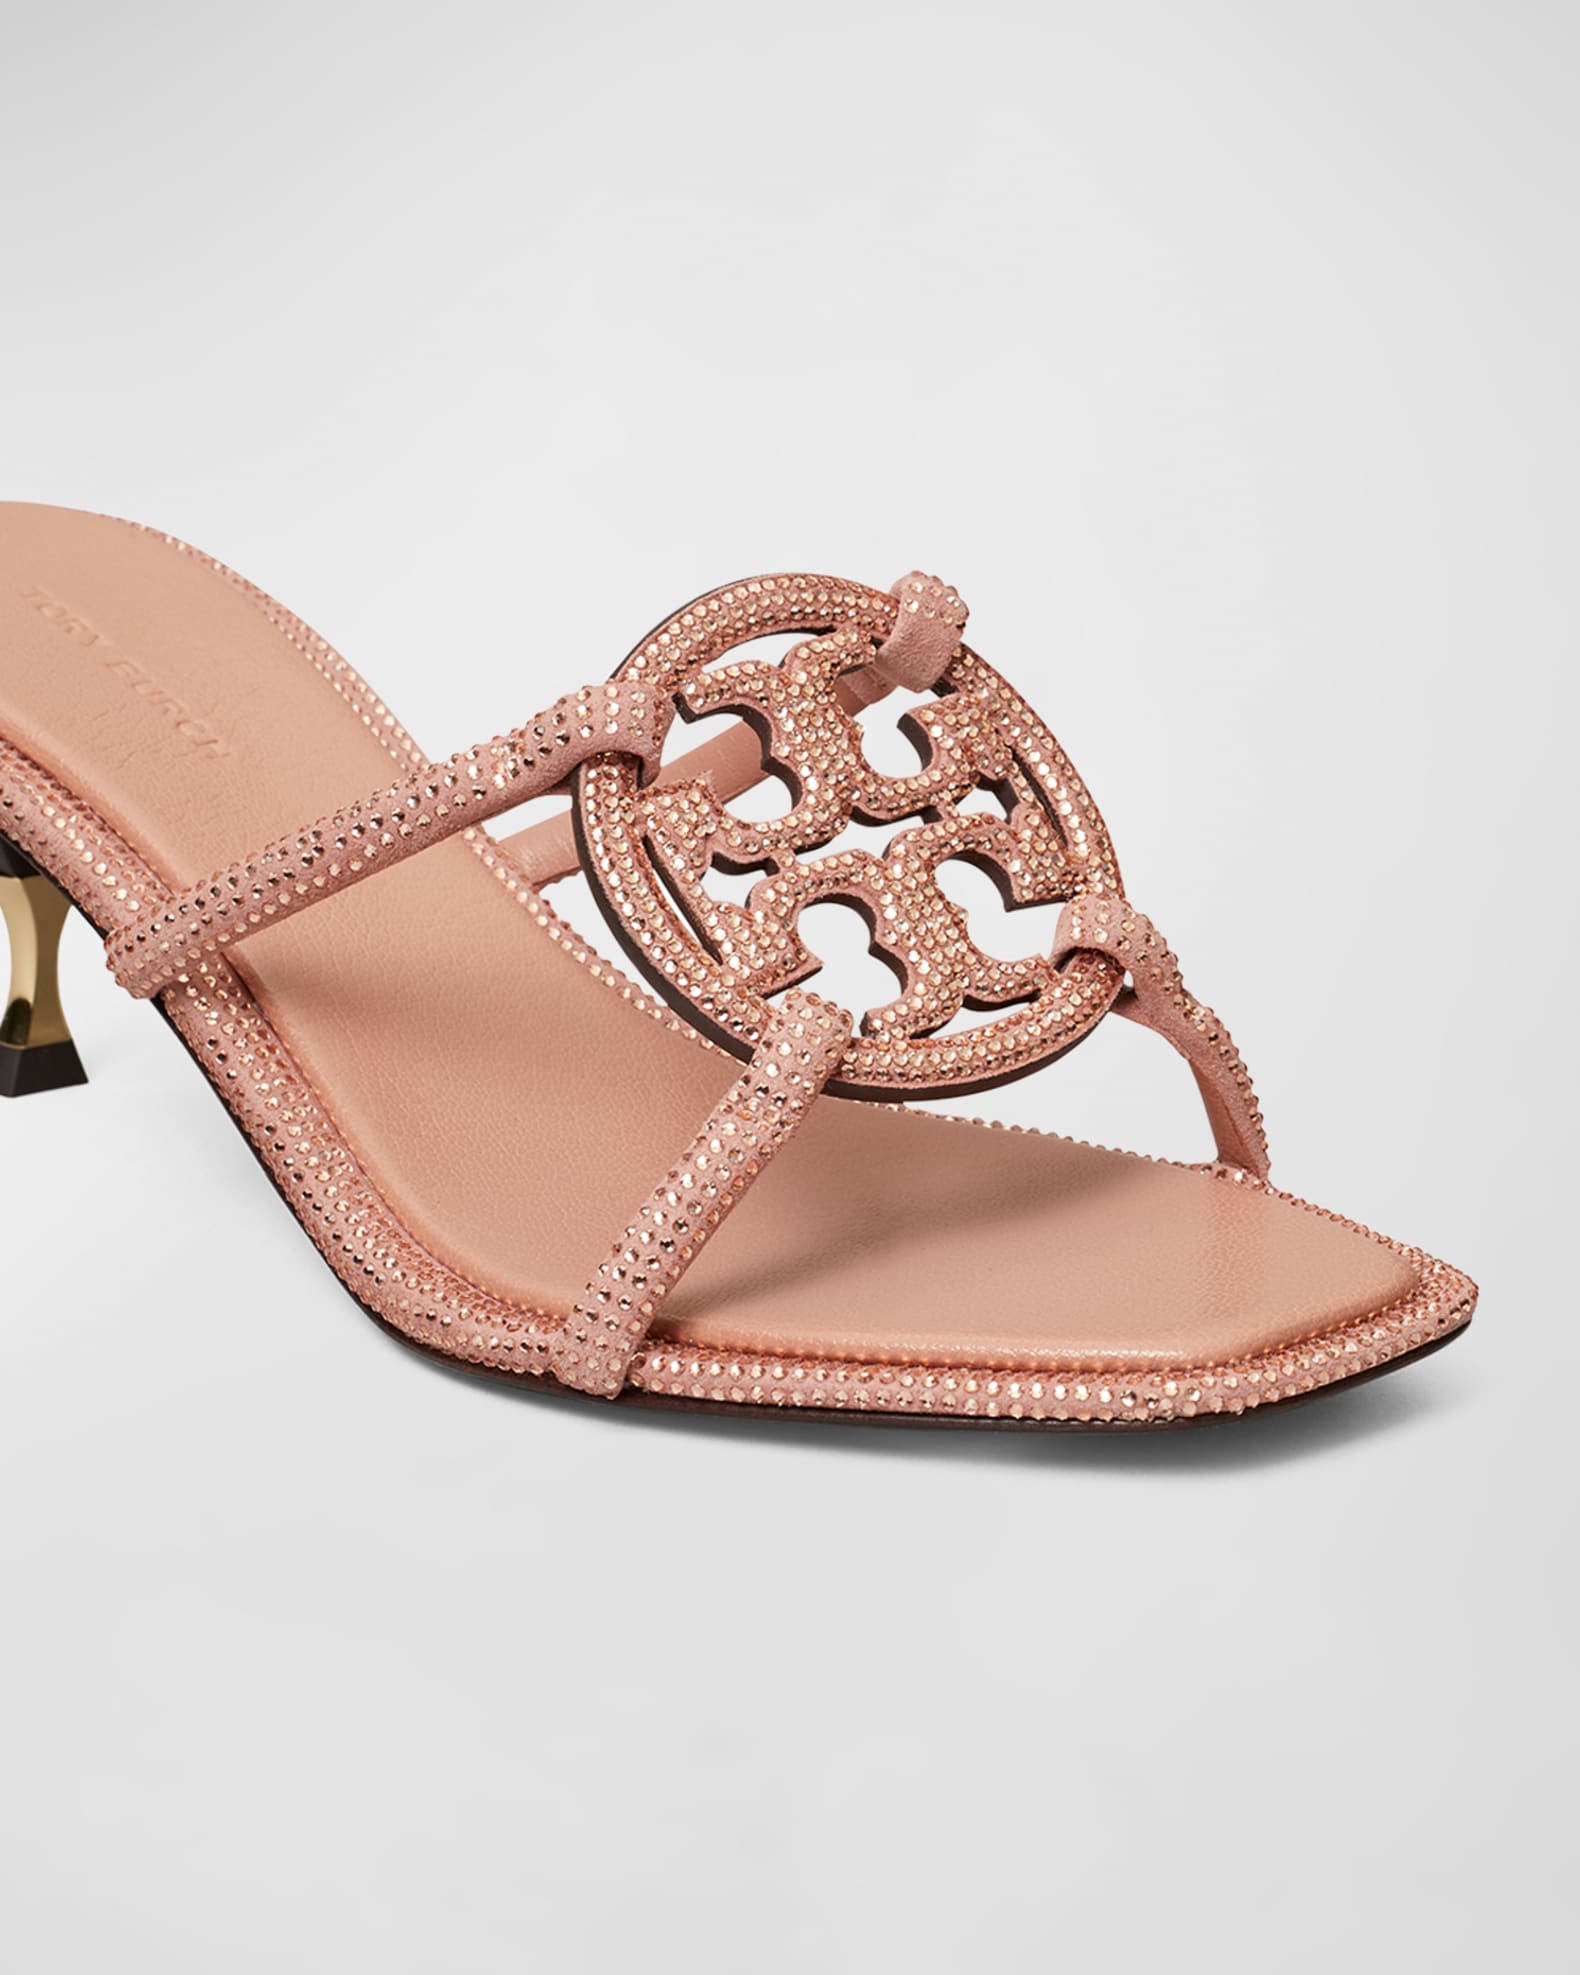 Miller Sandal: Women's Designer Sandals